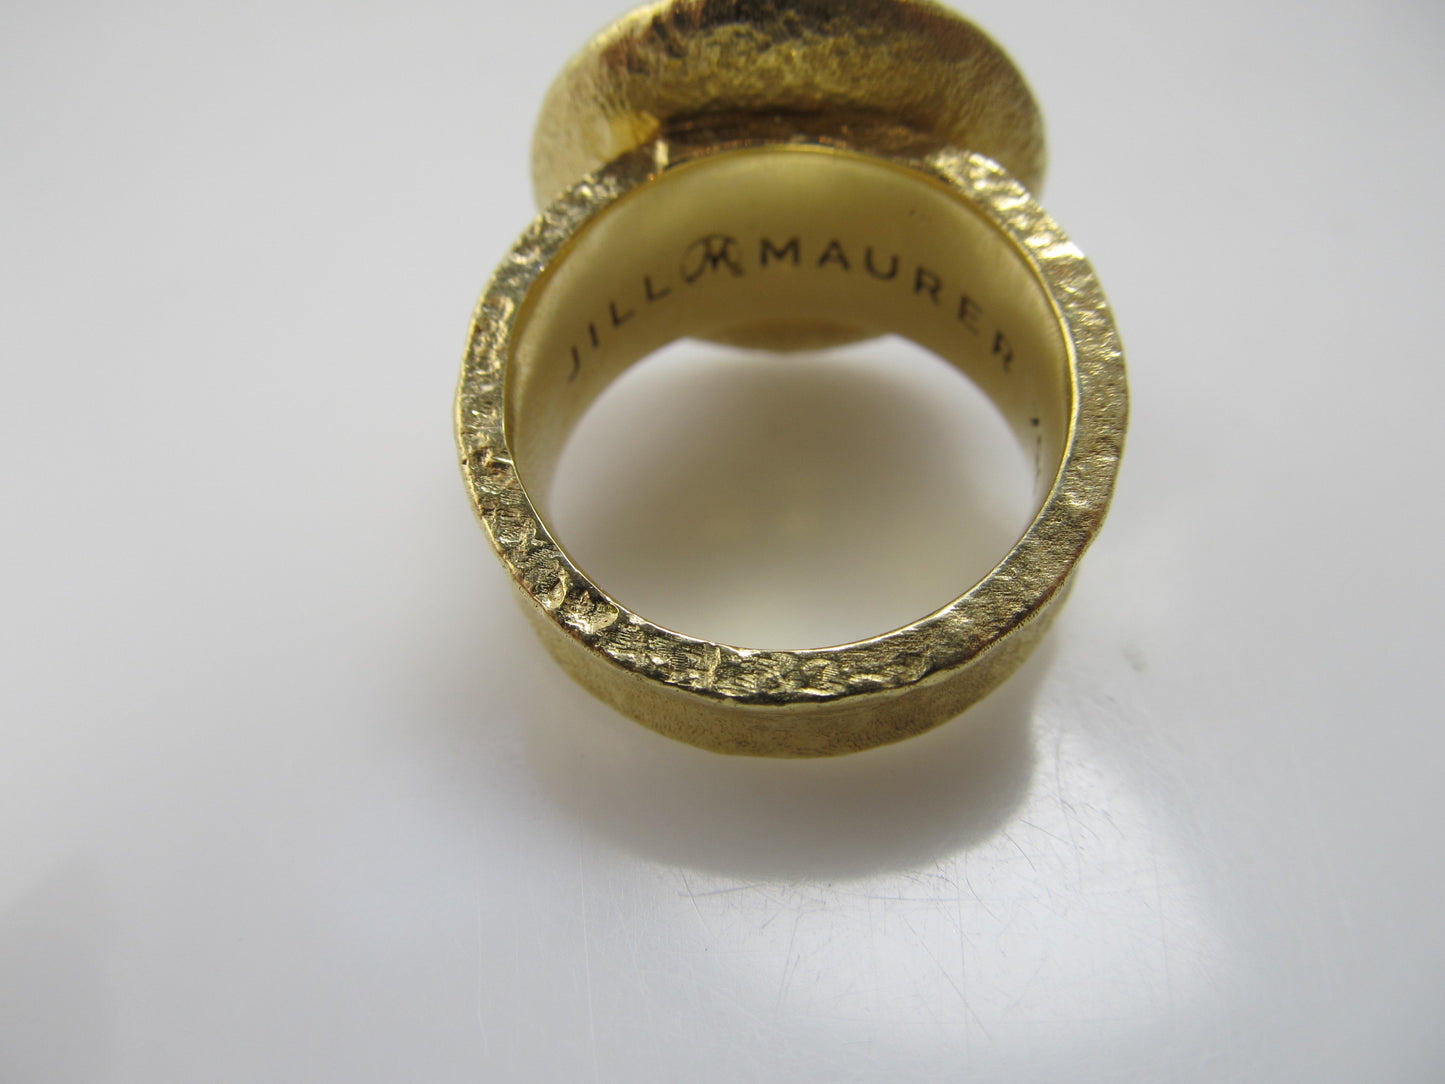 Jill Maurer 18k rose cut sapphire diamond ring